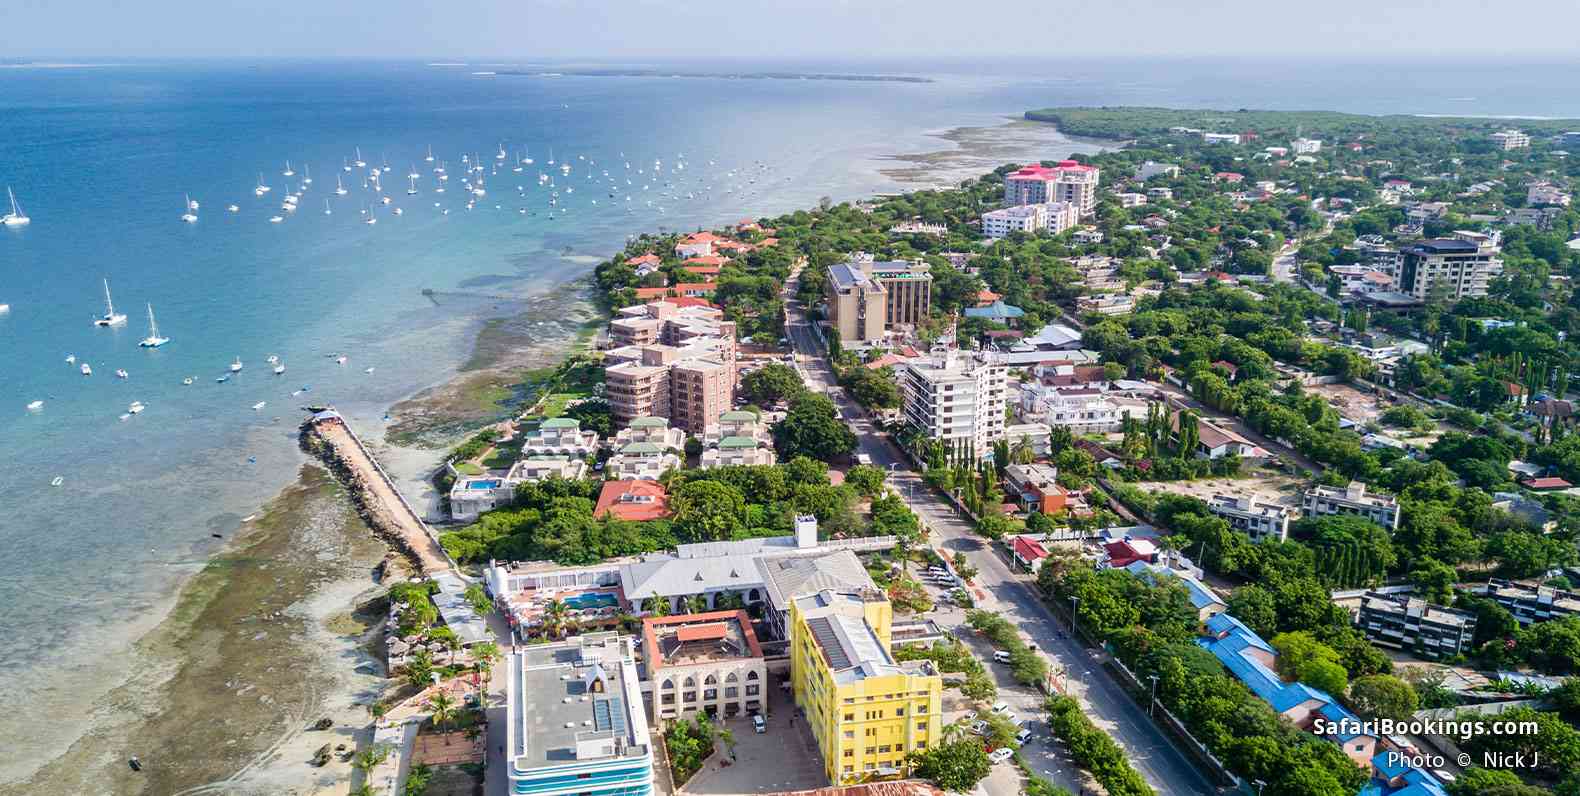 Aerial view of Dar es Salaam